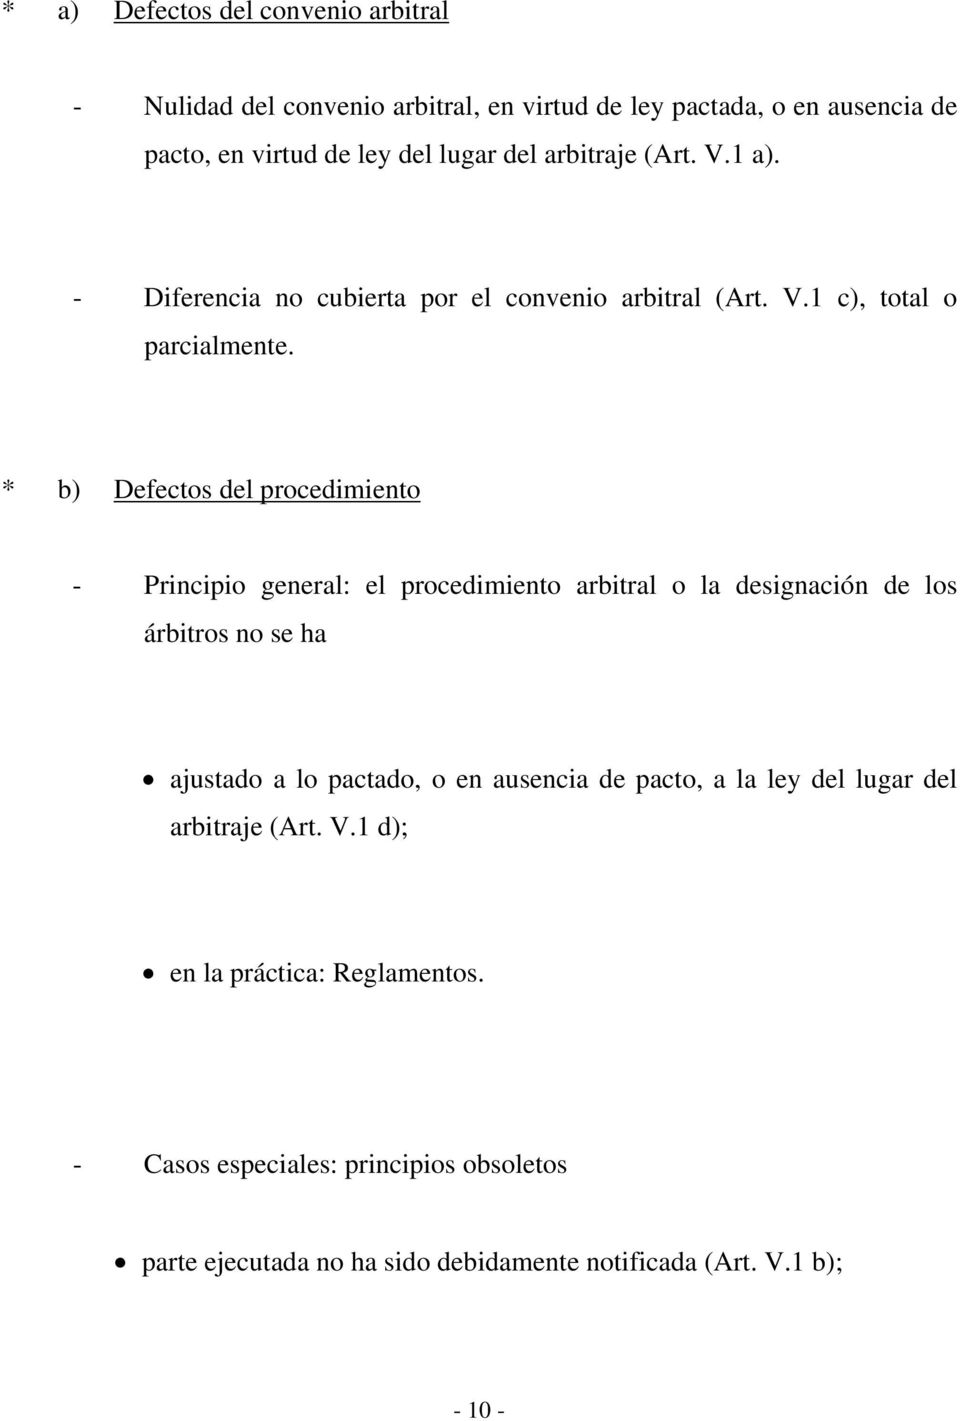 * b) Defectos del procedimiento - Principio general: el procedimiento arbitral o la designación de los árbitros no se ha ajustado a lo pactado, o en